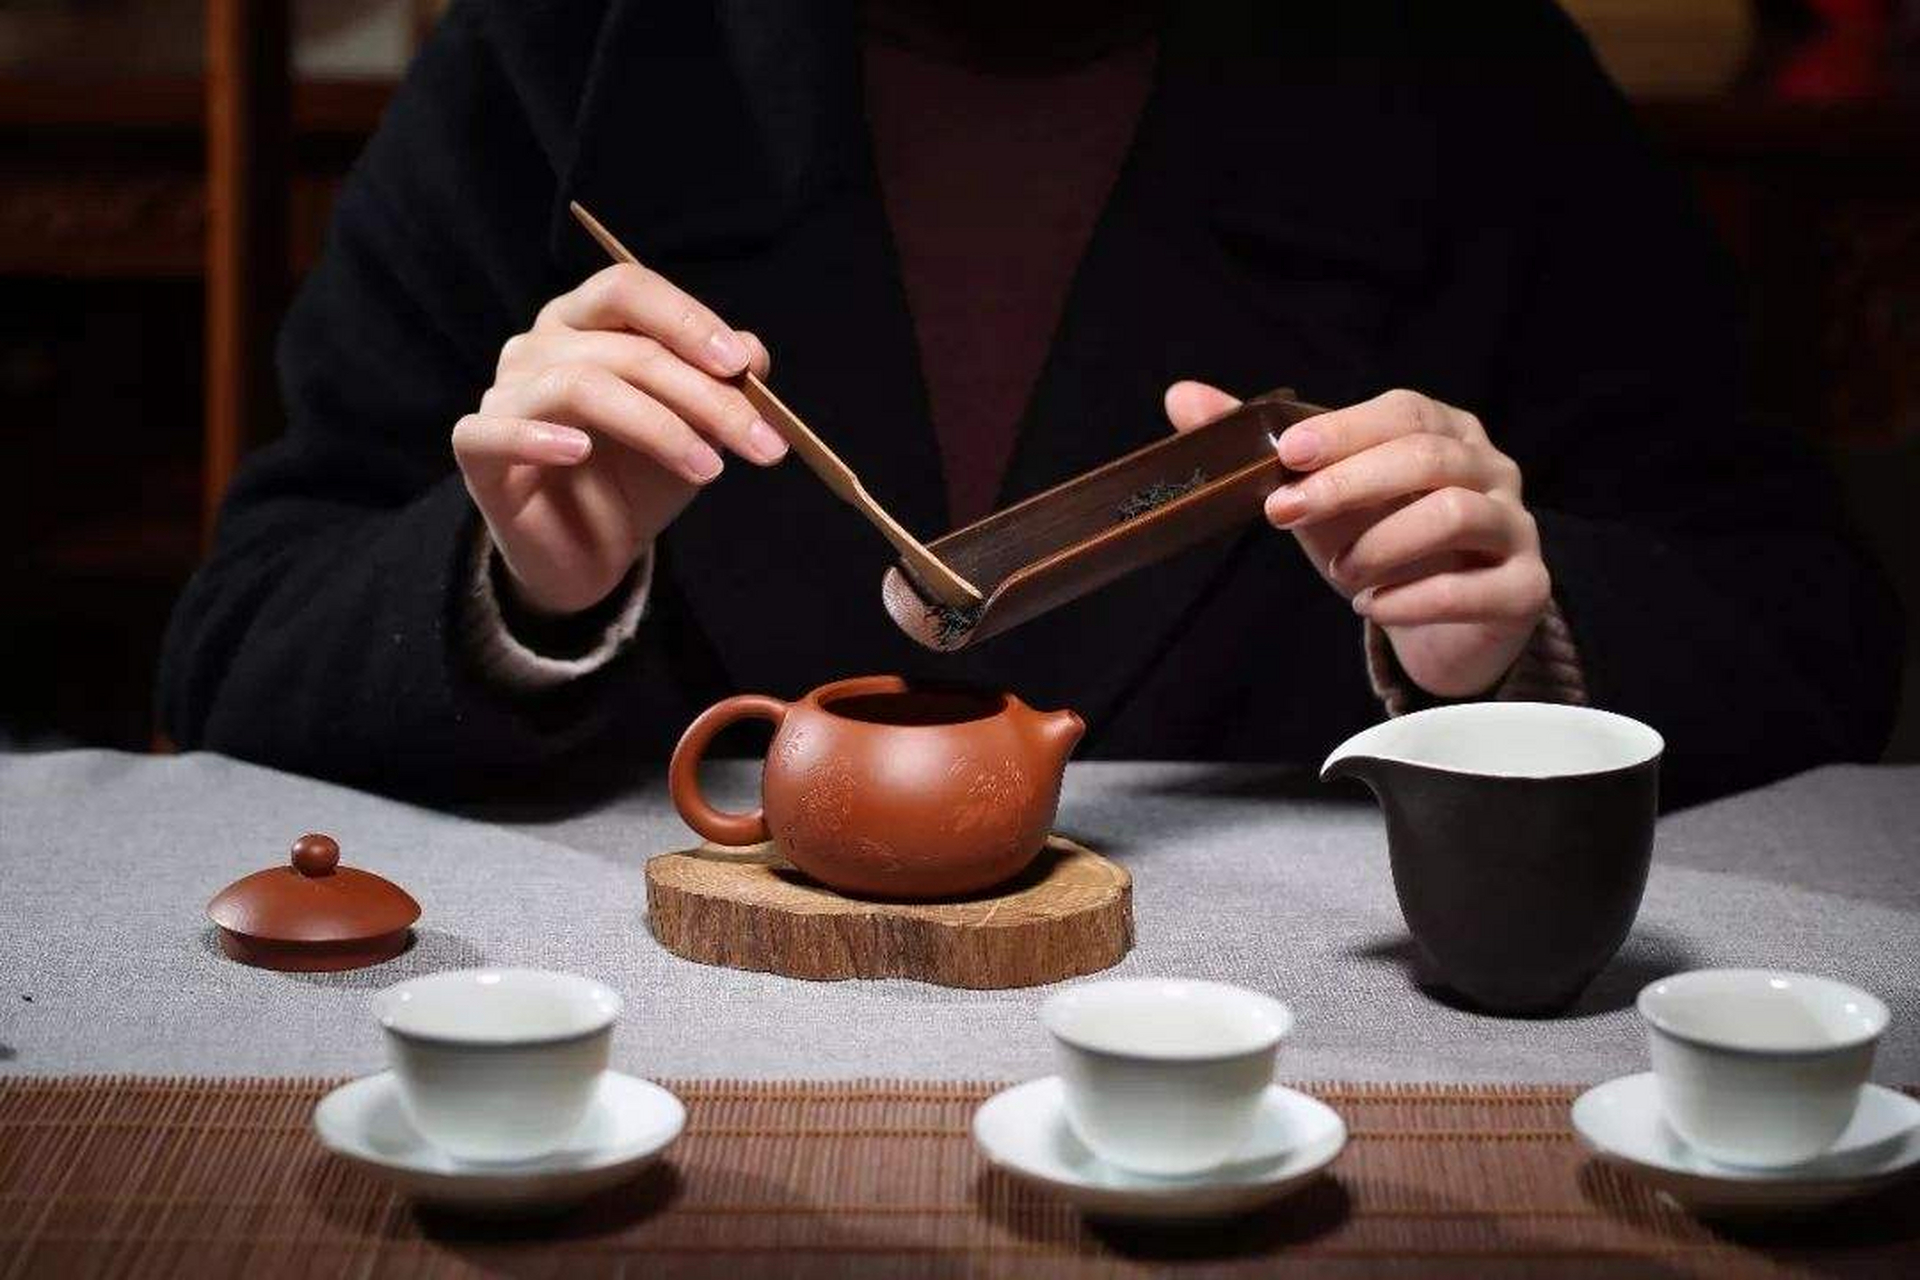 喝茶 放松心情 喝茶是一种古老且普遍的社交和饮品文化